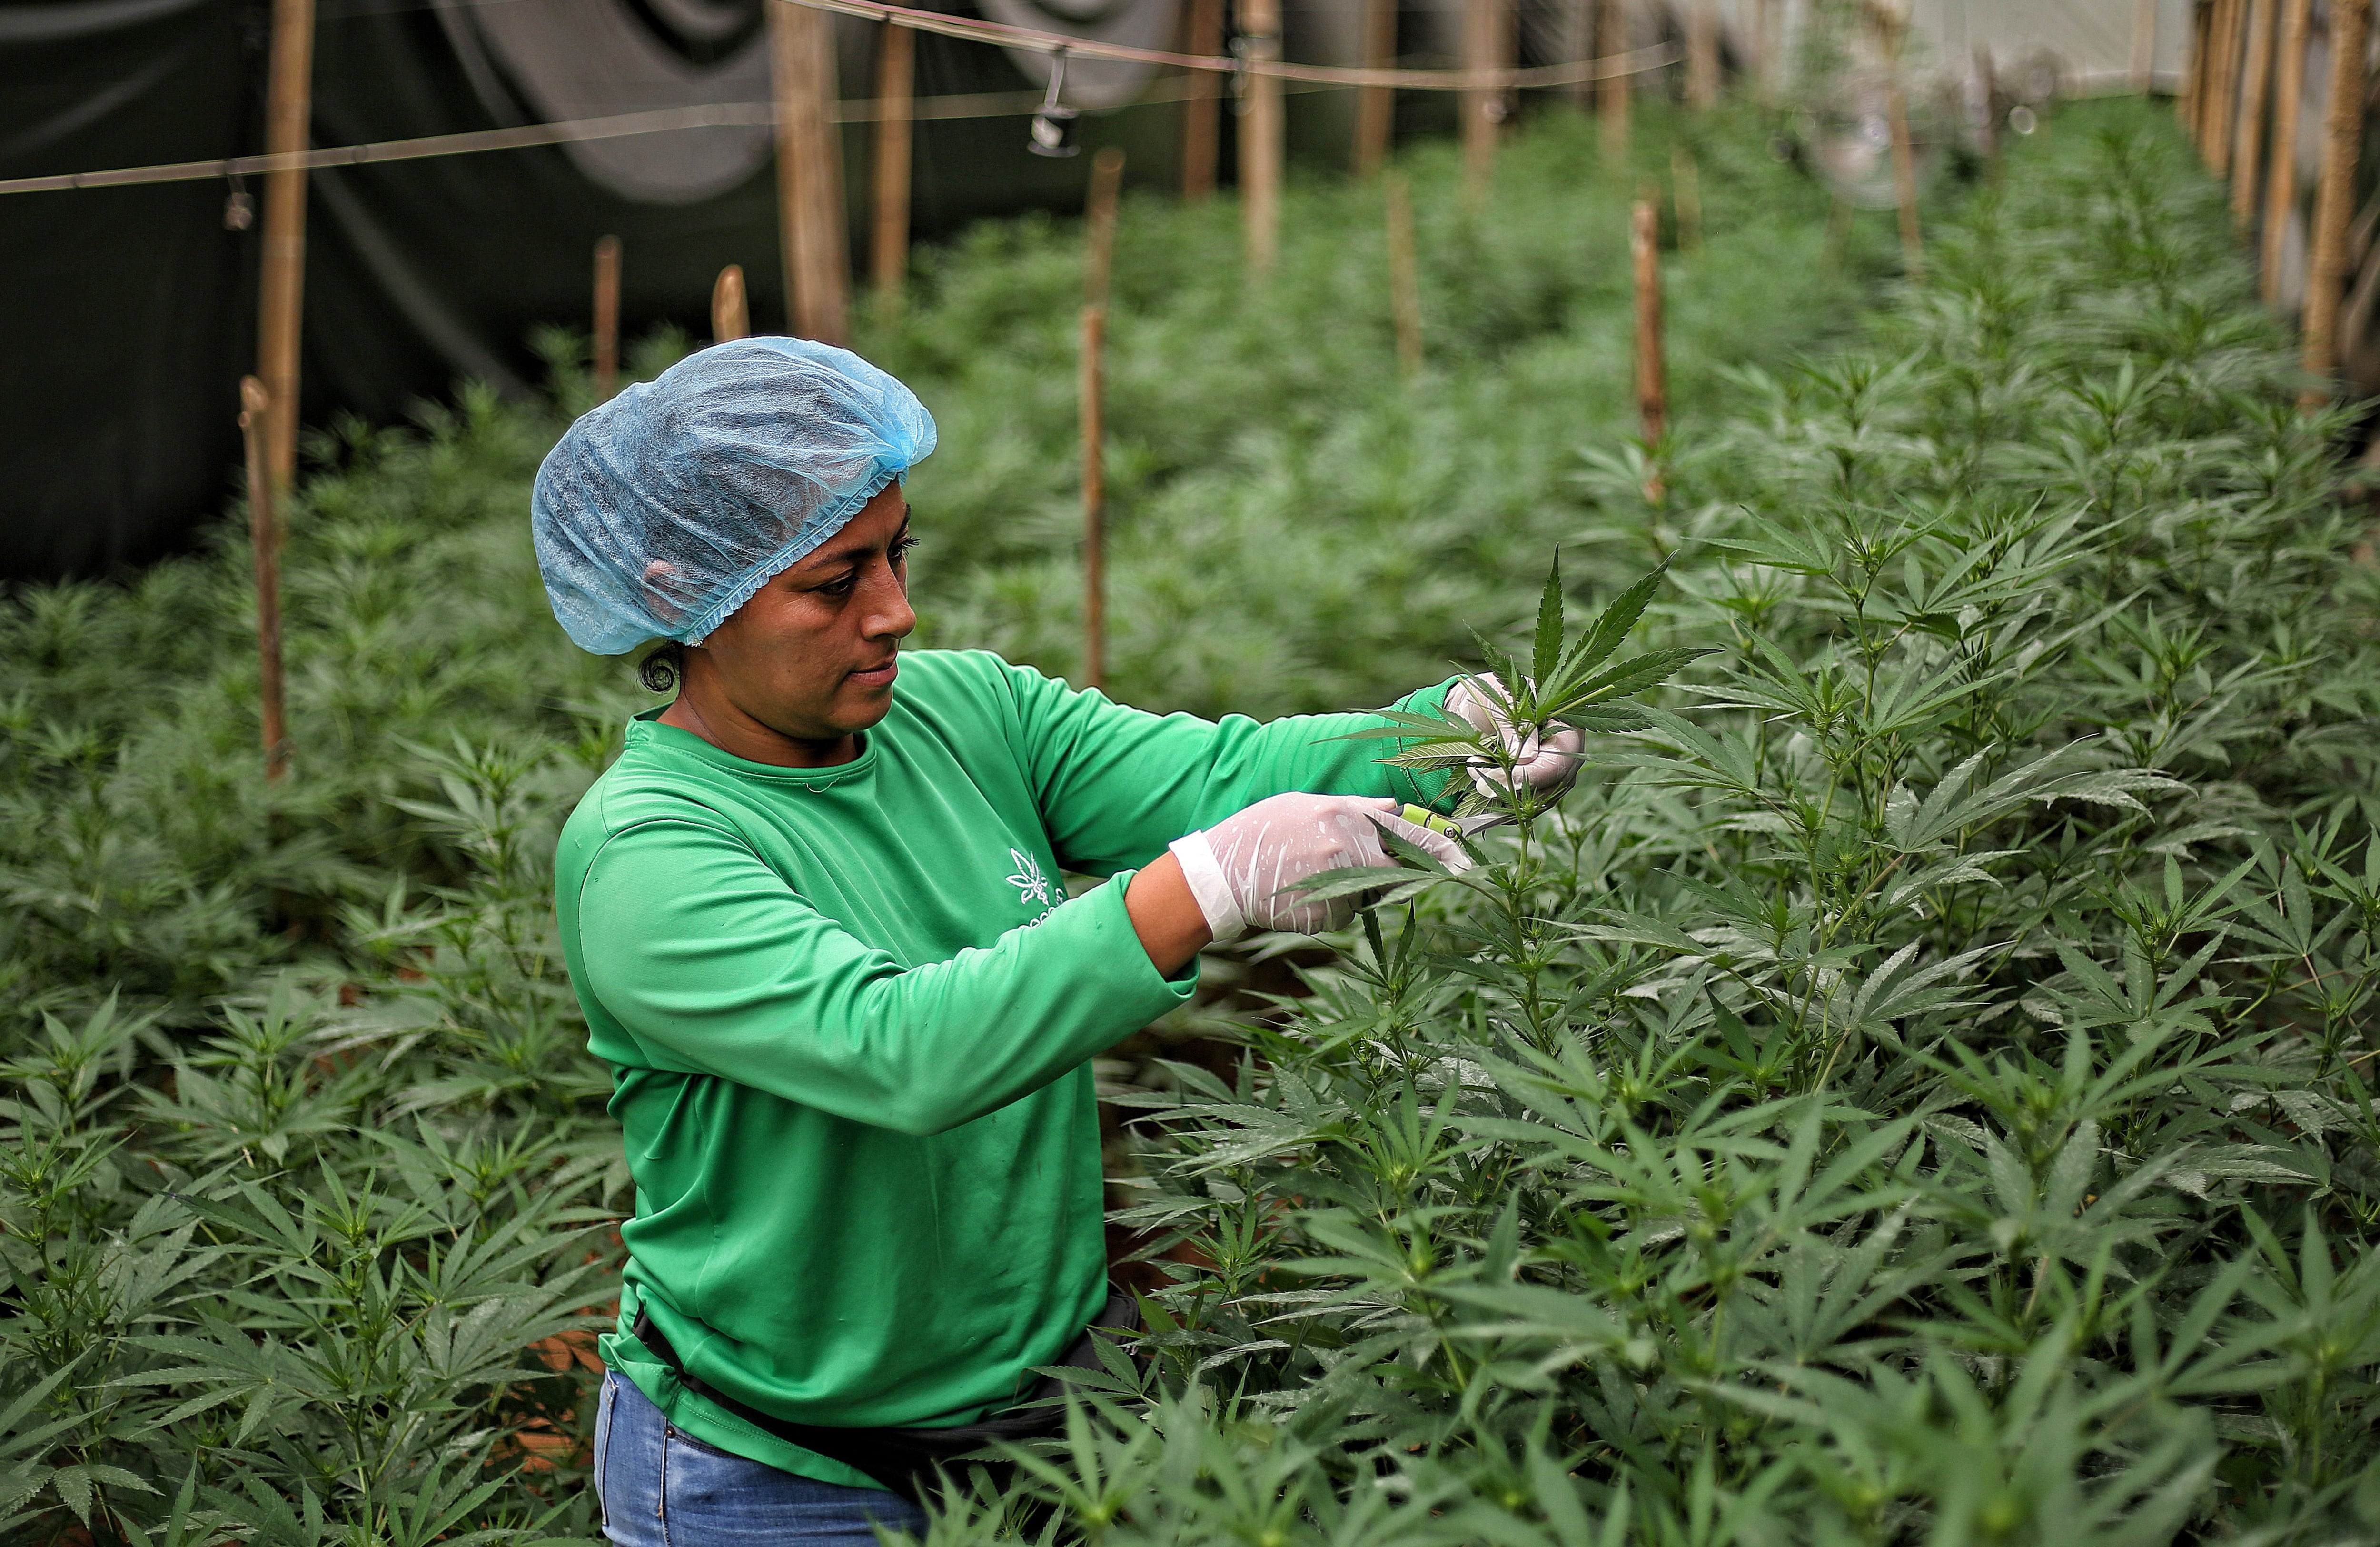 El país le apostará a la formación de colombianos para la producción de productos a base de cannabis - crédito Mario Baos/EFE
